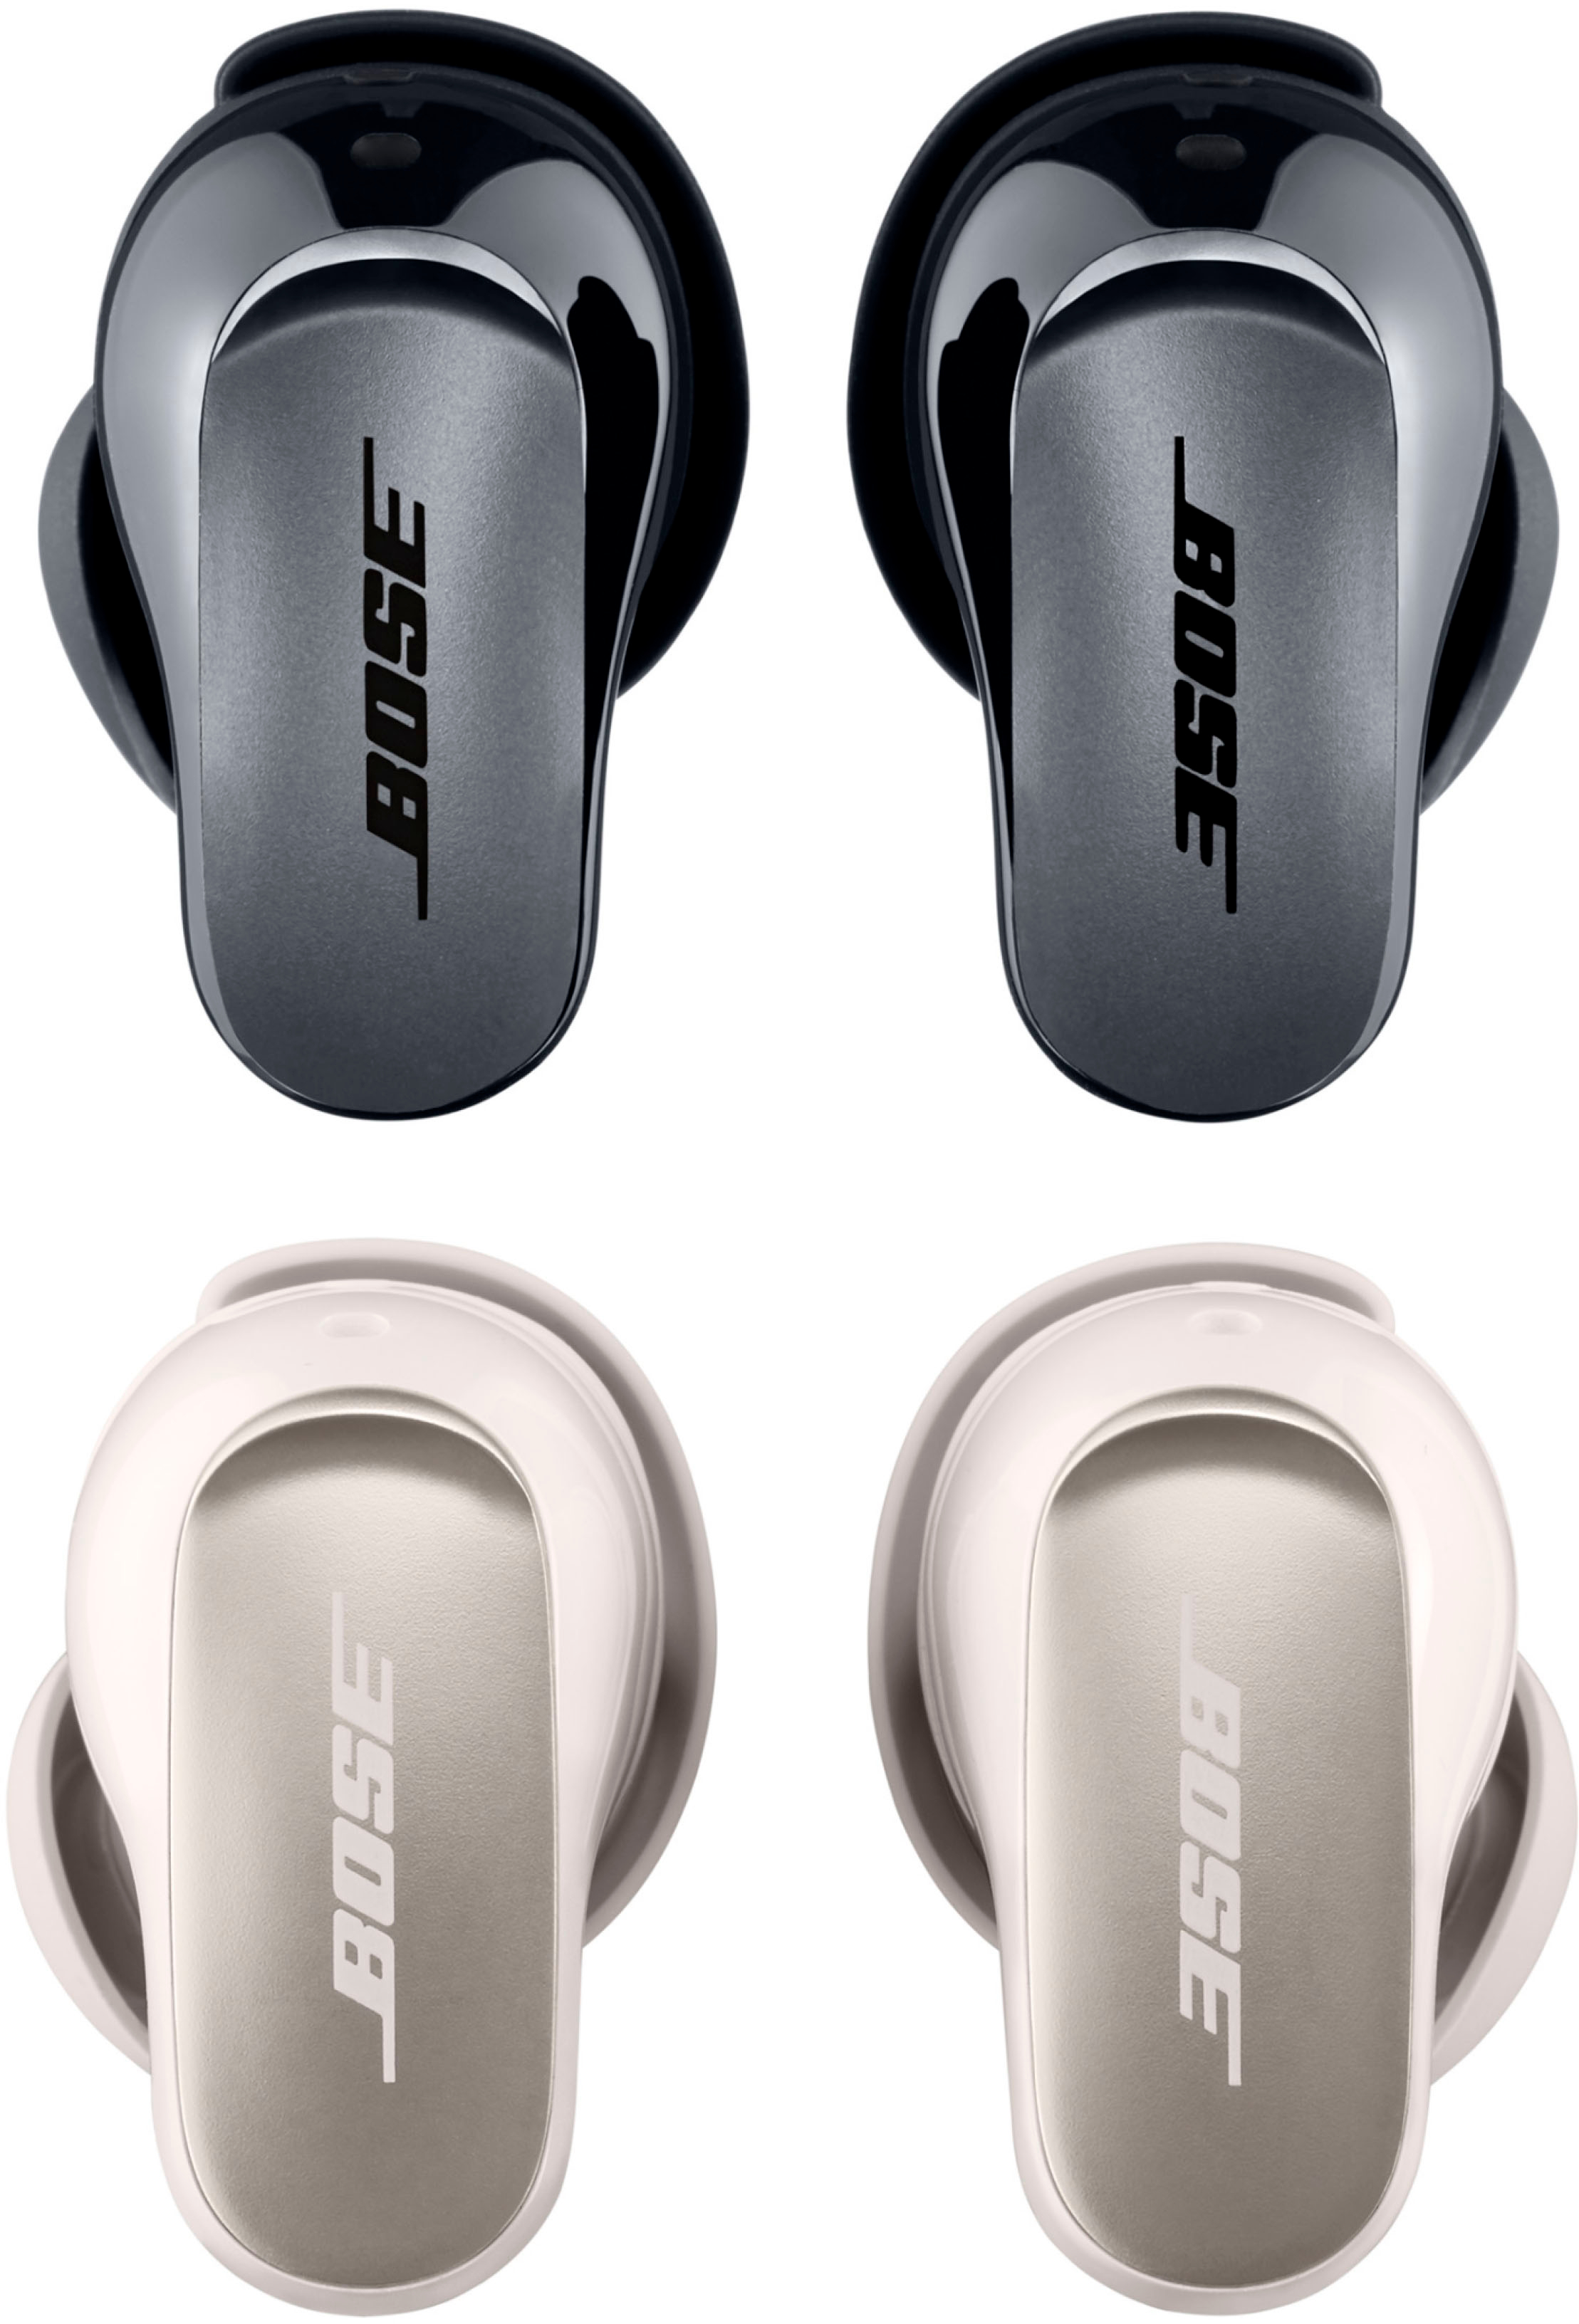 Bose QuietComfort Ultra True Wireless Noise Cancelling In-Ear Earbuds Black  882826-0010 - Best Buy